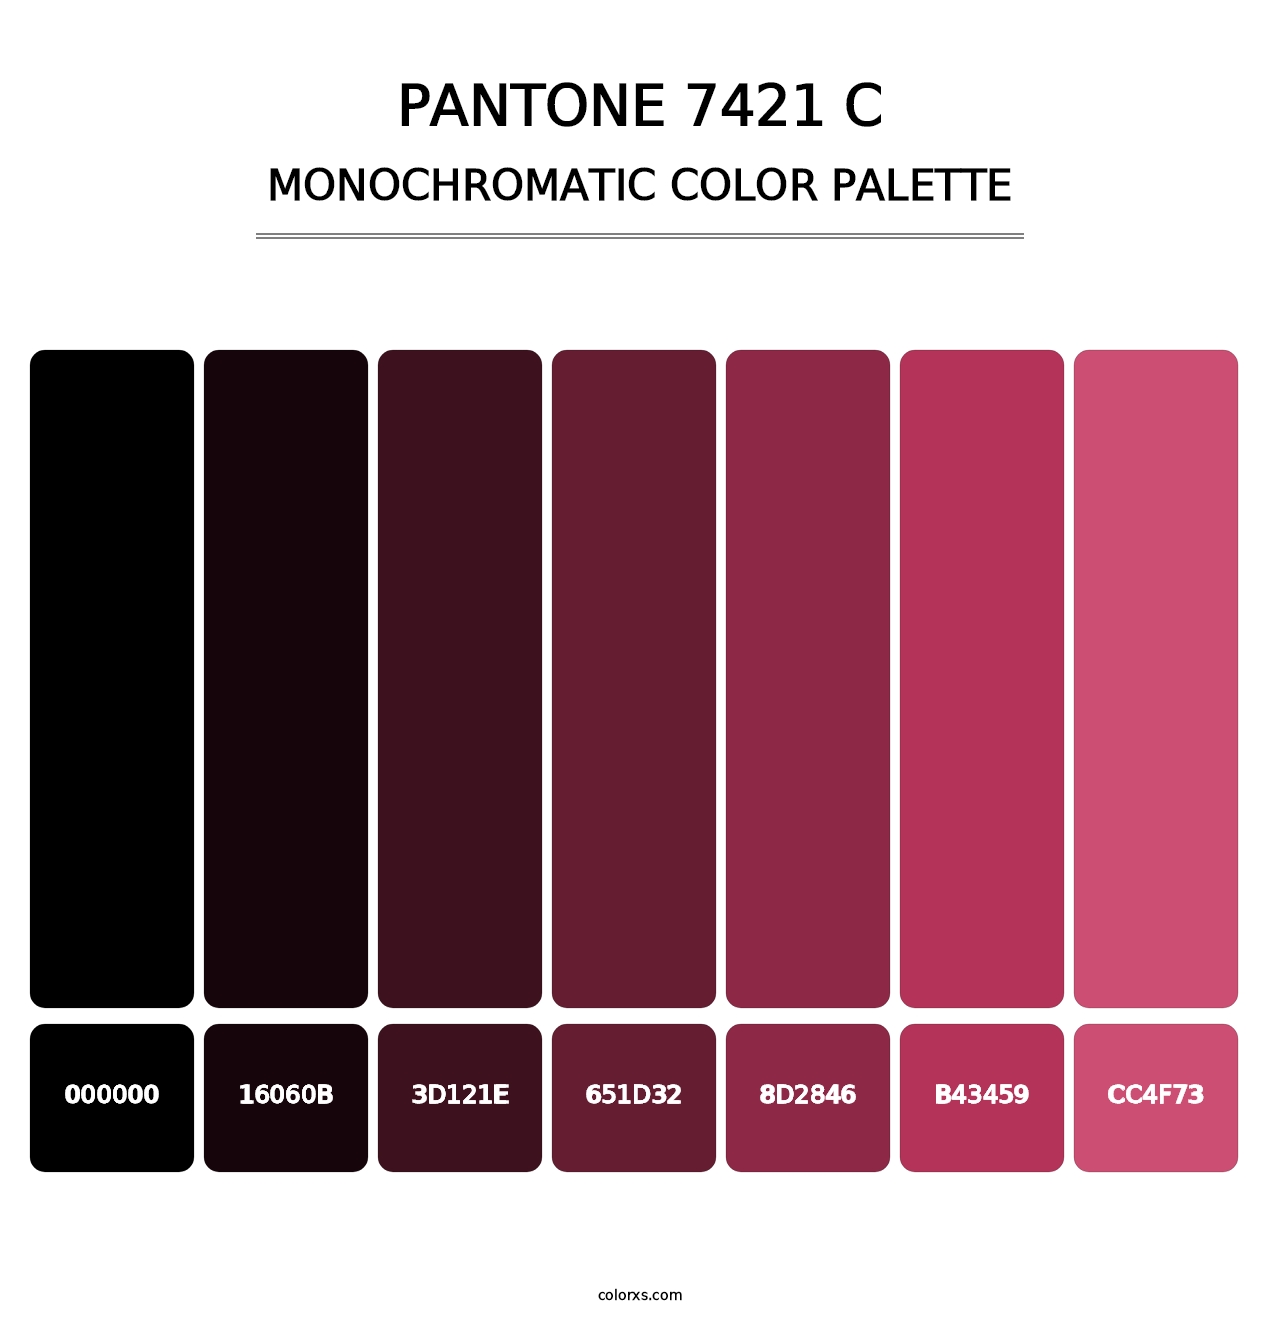 PANTONE 7421 C - Monochromatic Color Palette